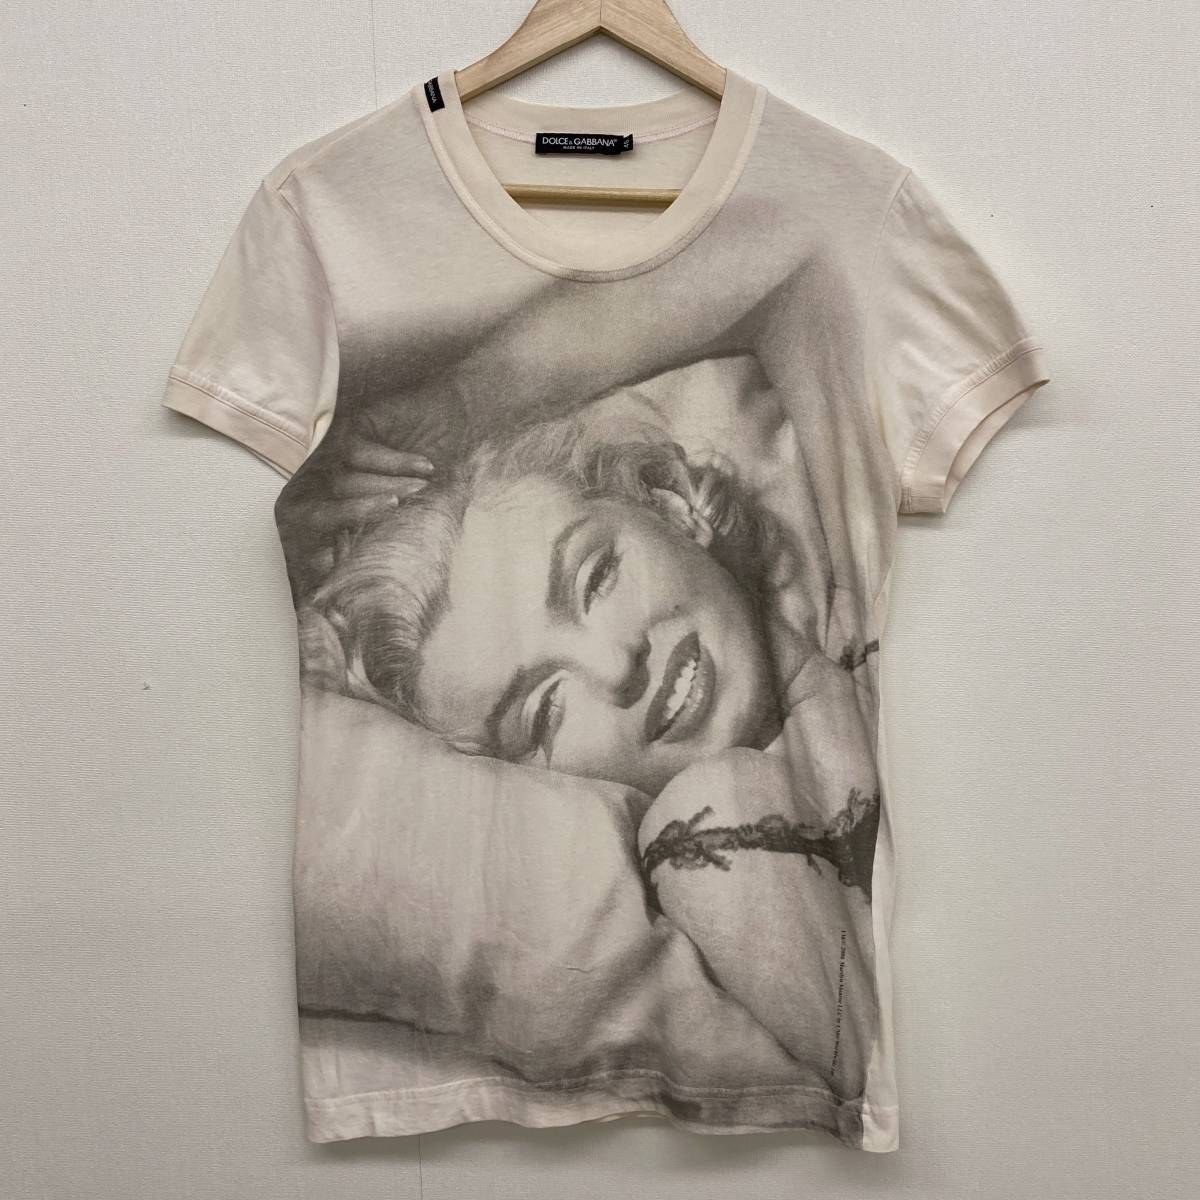 名作 DOLCE&GABBANA マリリンモンロー Tシャツ イタリア製 メンズ 46サイズ ドルチェ&ガッバーナ ドルガバ D&G Marilyn Monroe 3060195